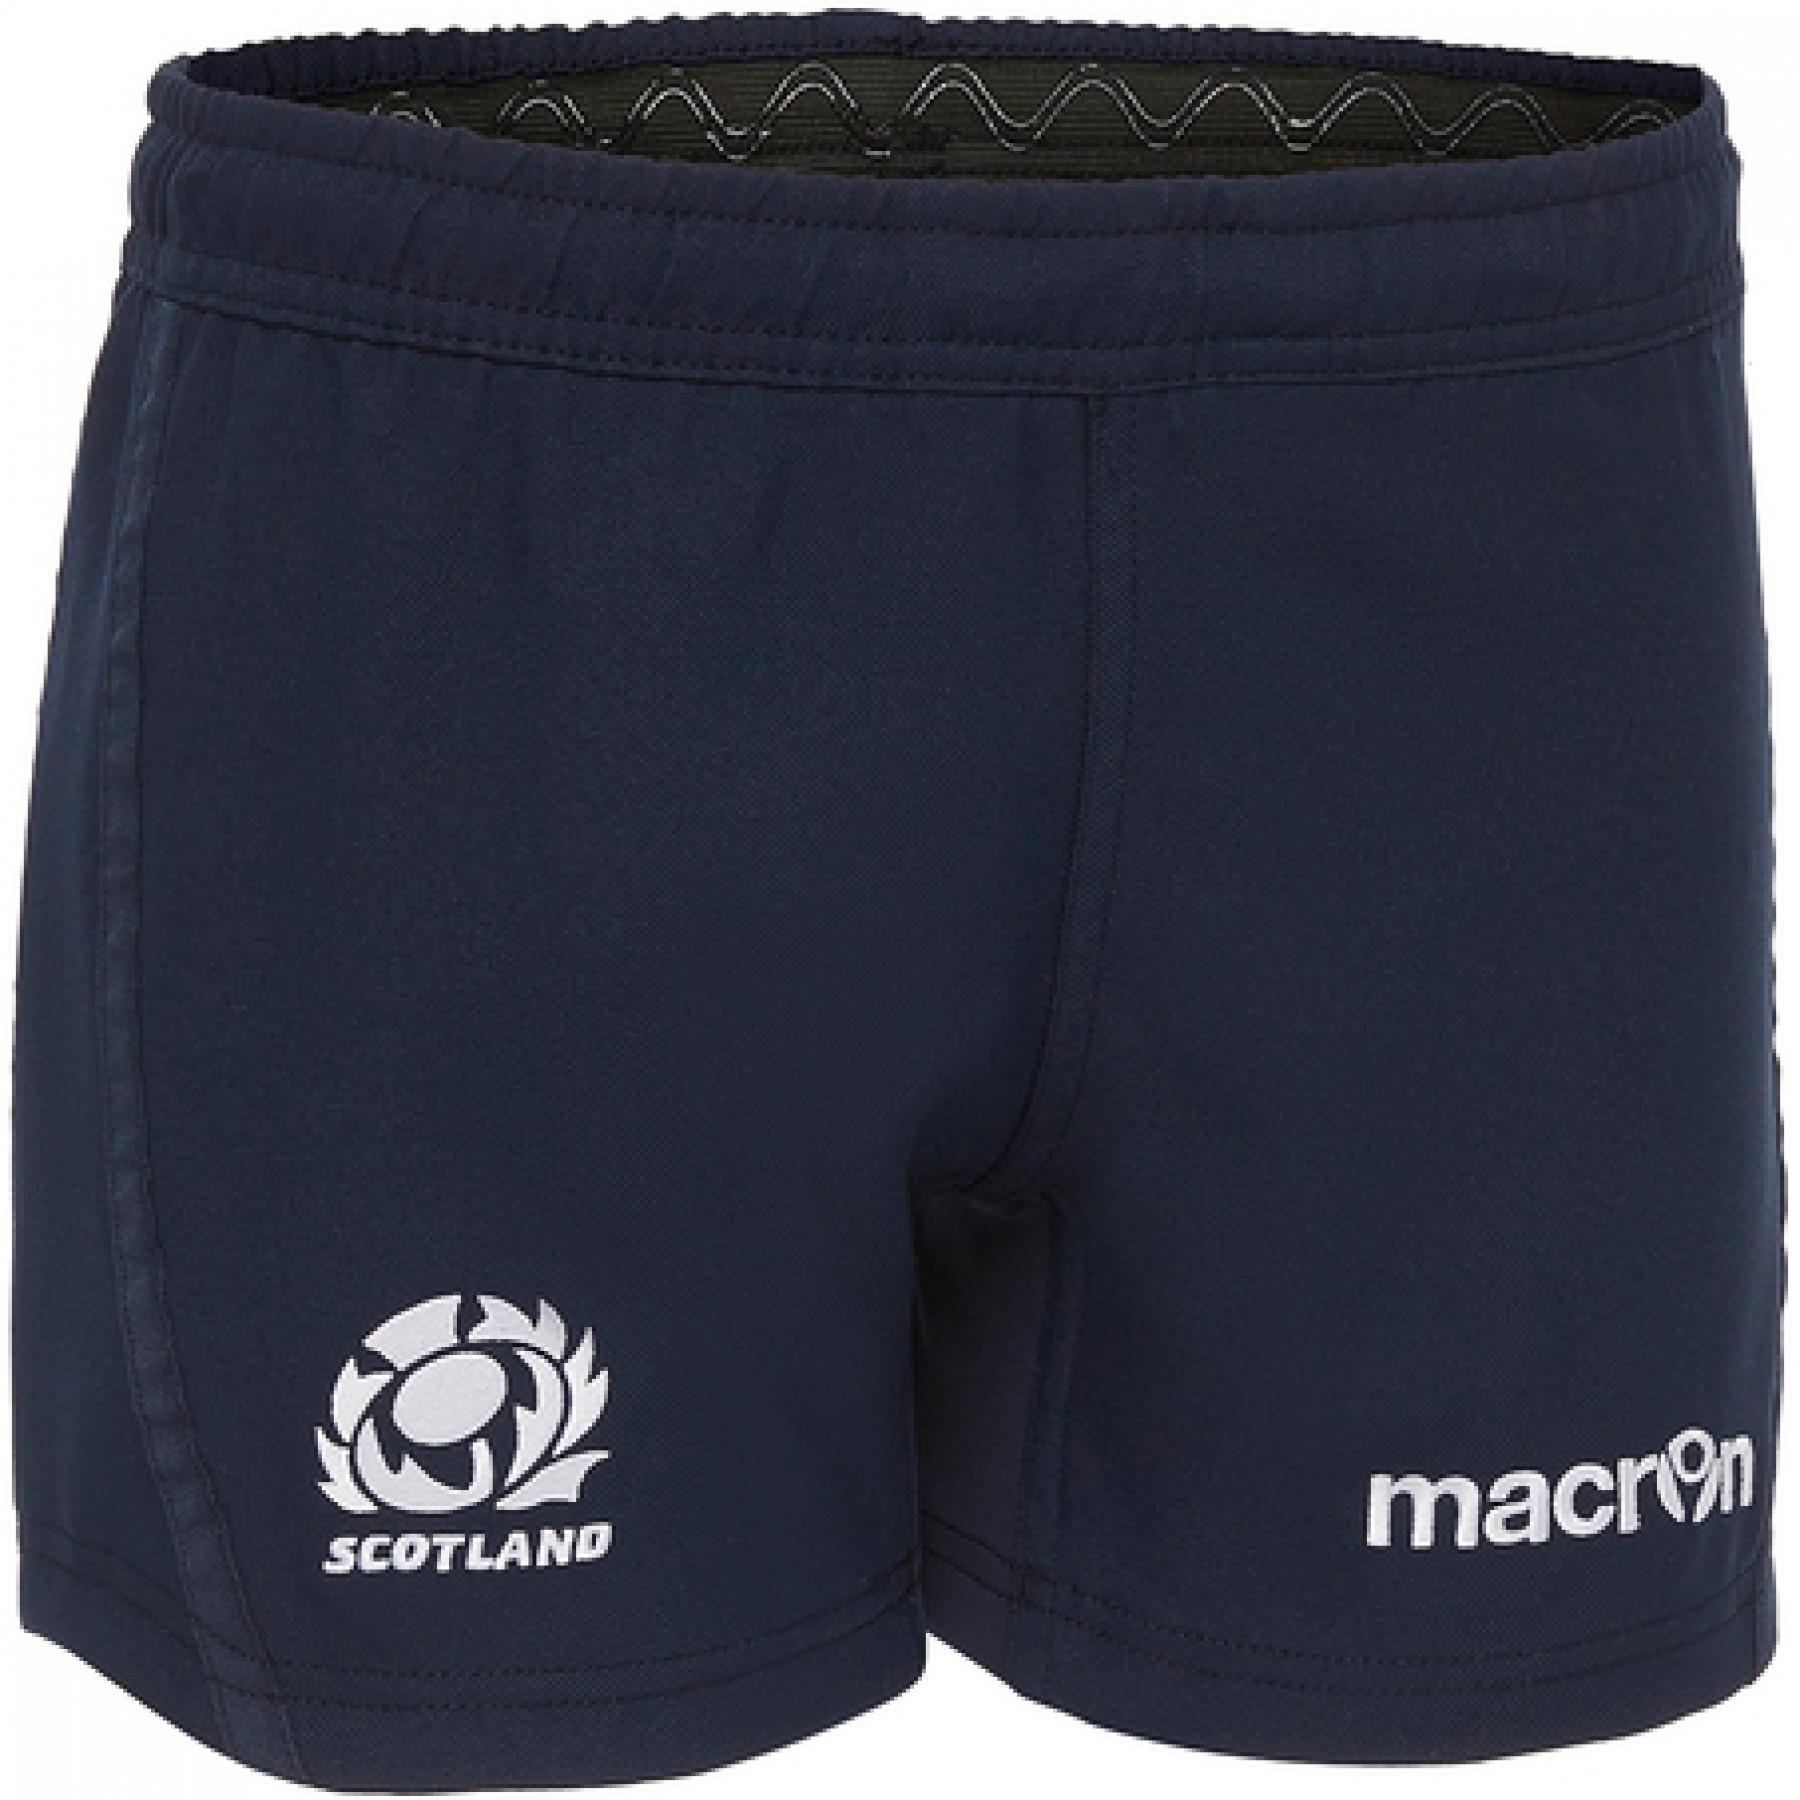 Children's shorts Scotland 2020/21